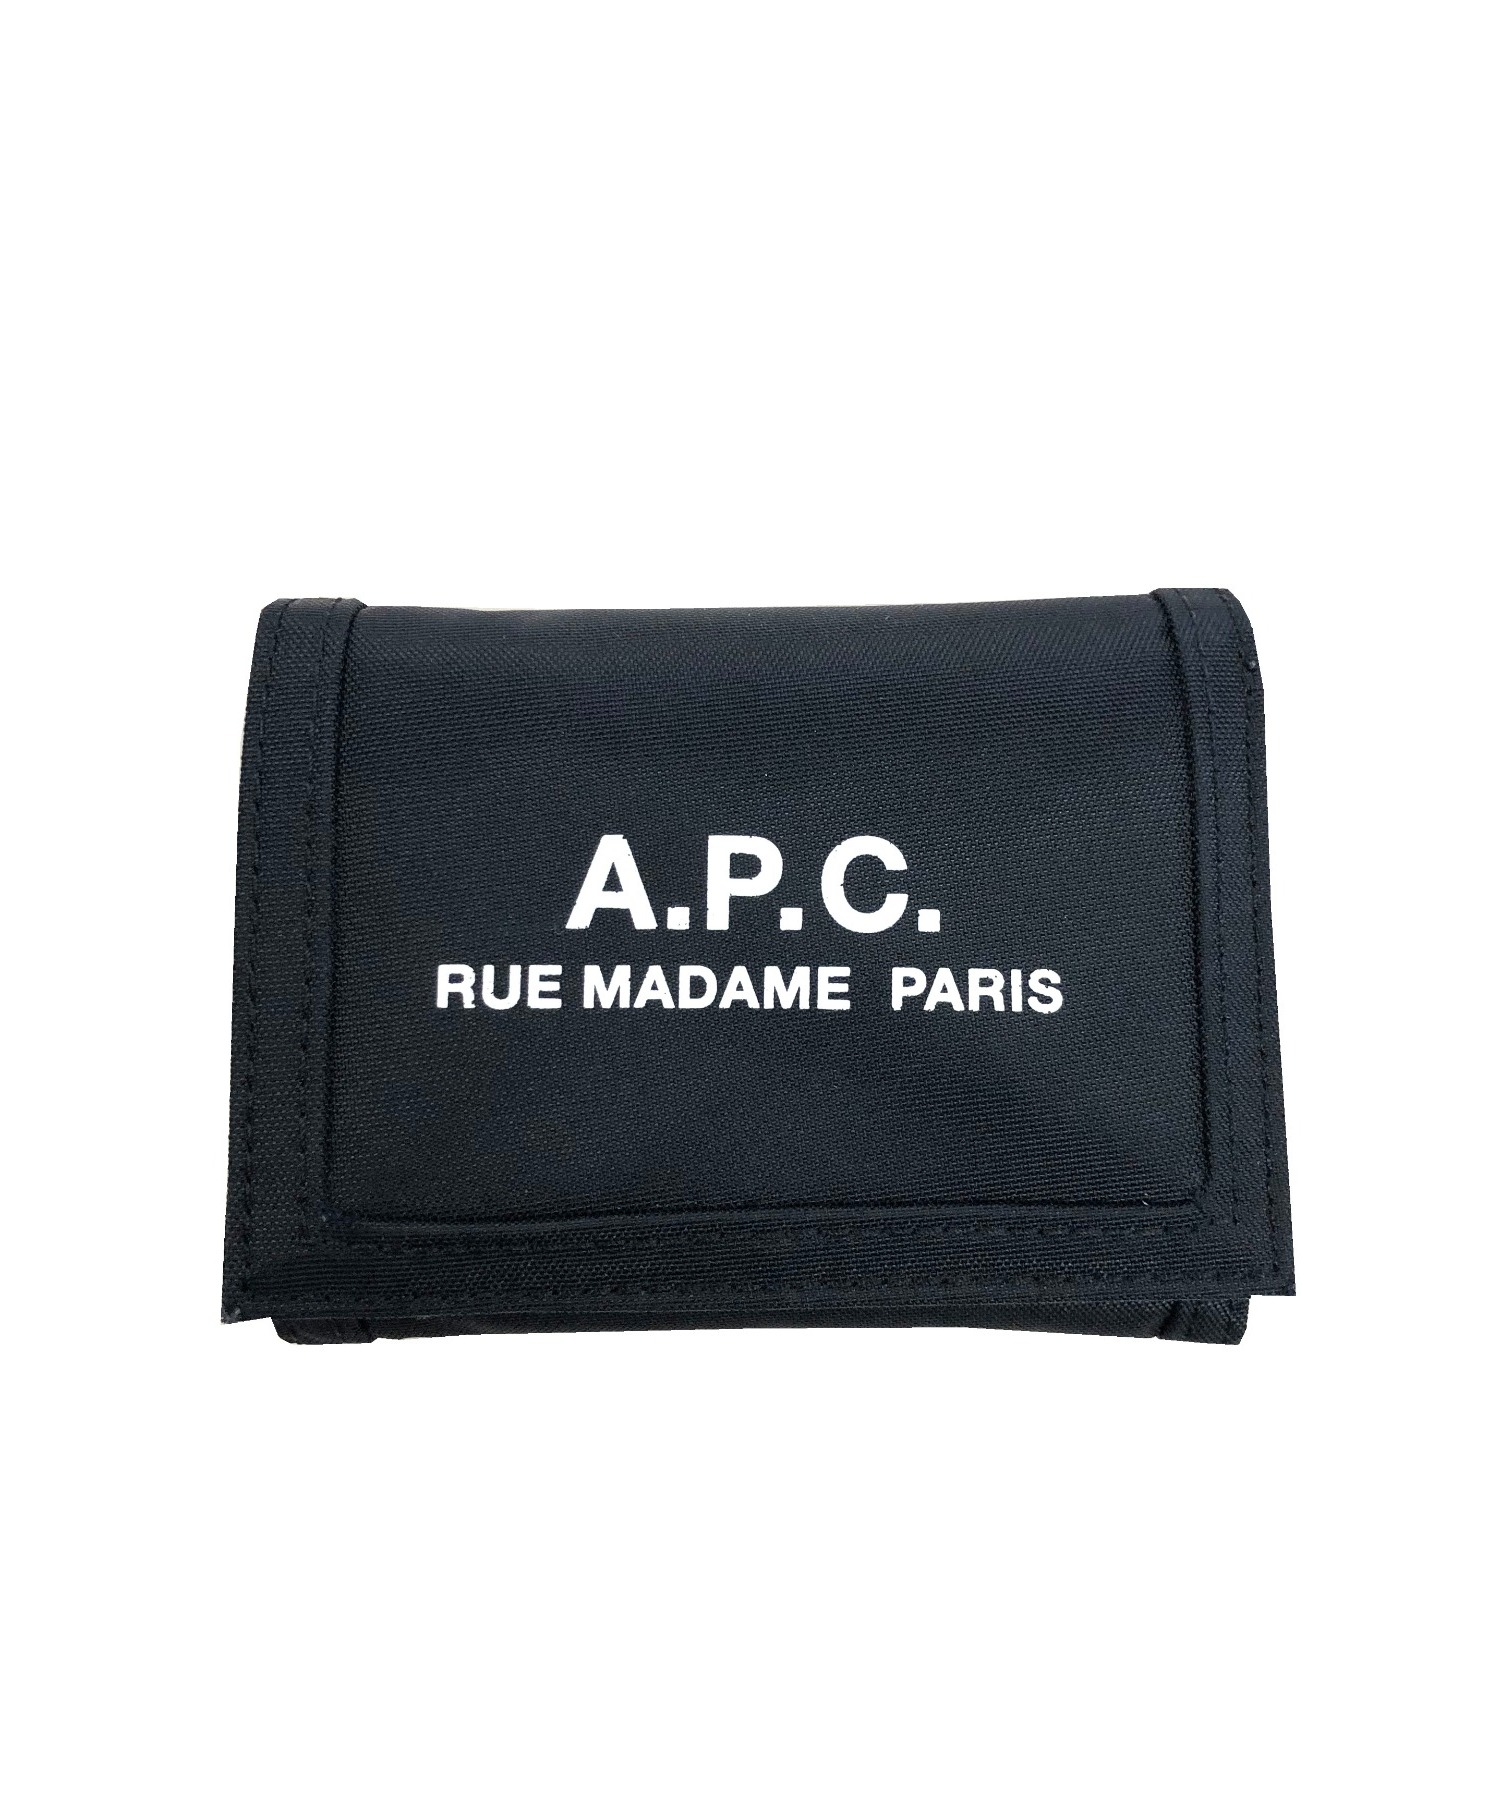 A.P.C. (アーペーセー) 3つ折り財布 ブラック PAACX-H63283